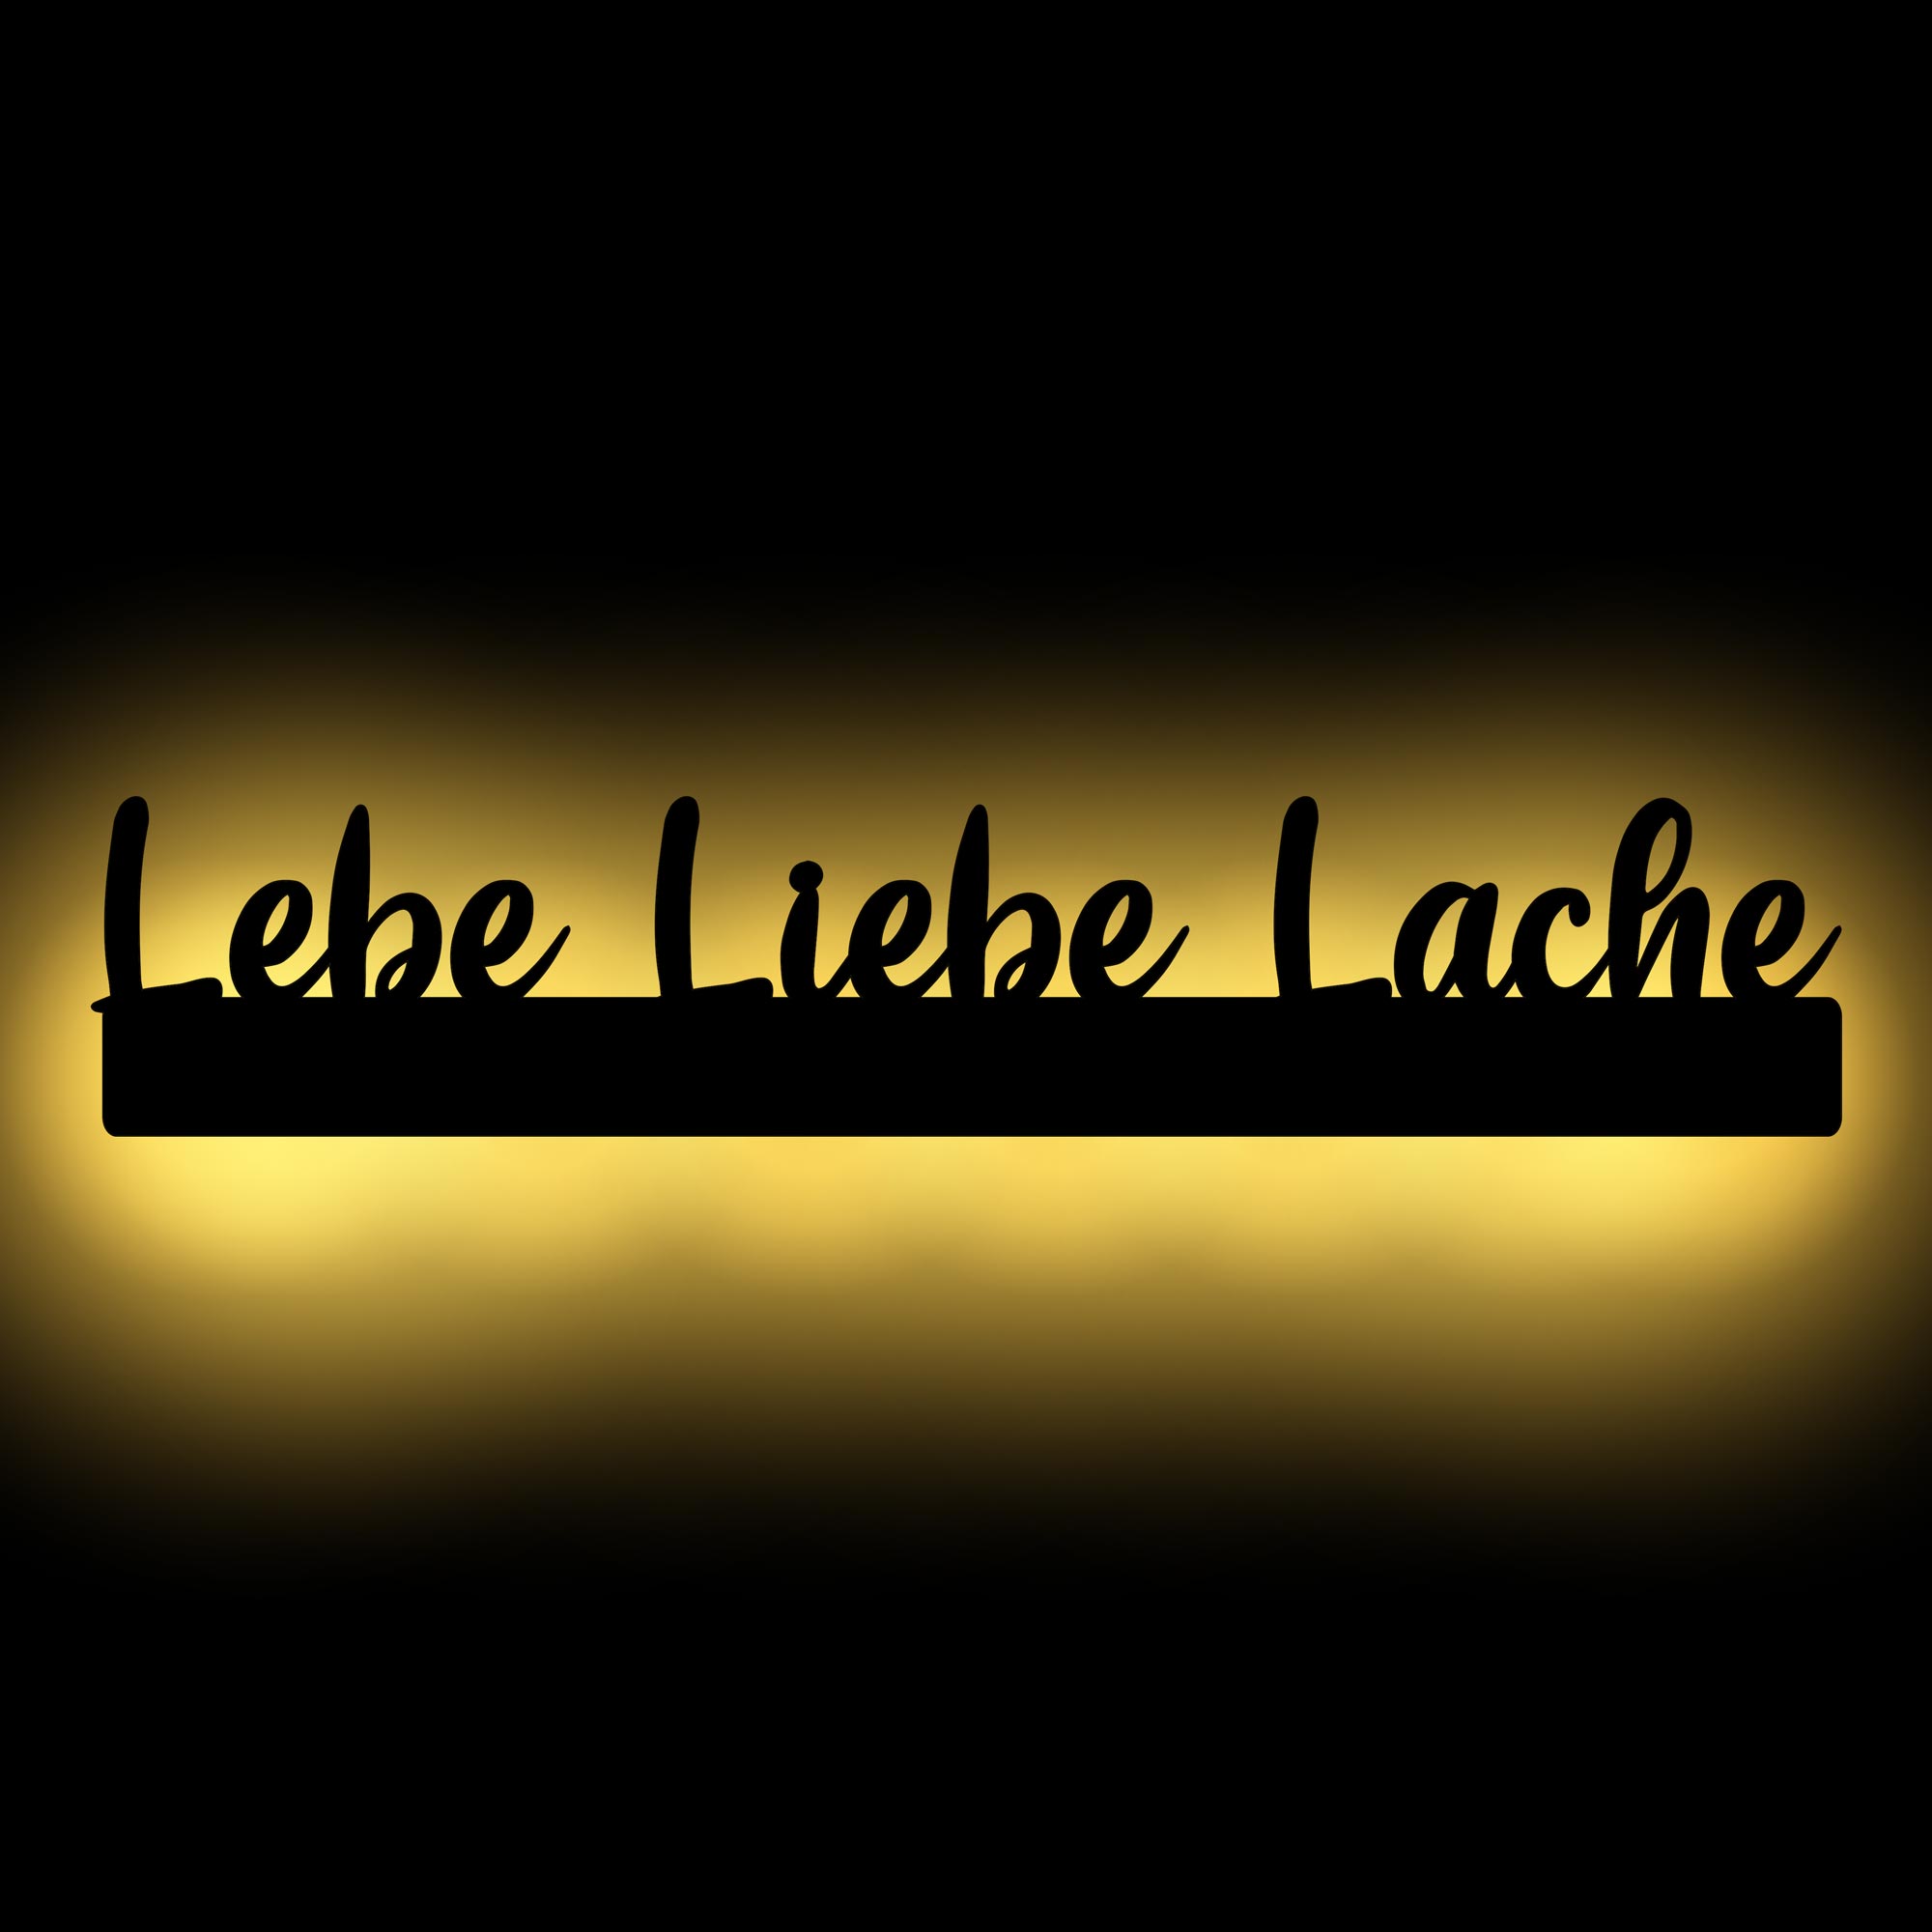 LED Schrift Lebe Liebe Lache Holz Wand Deko